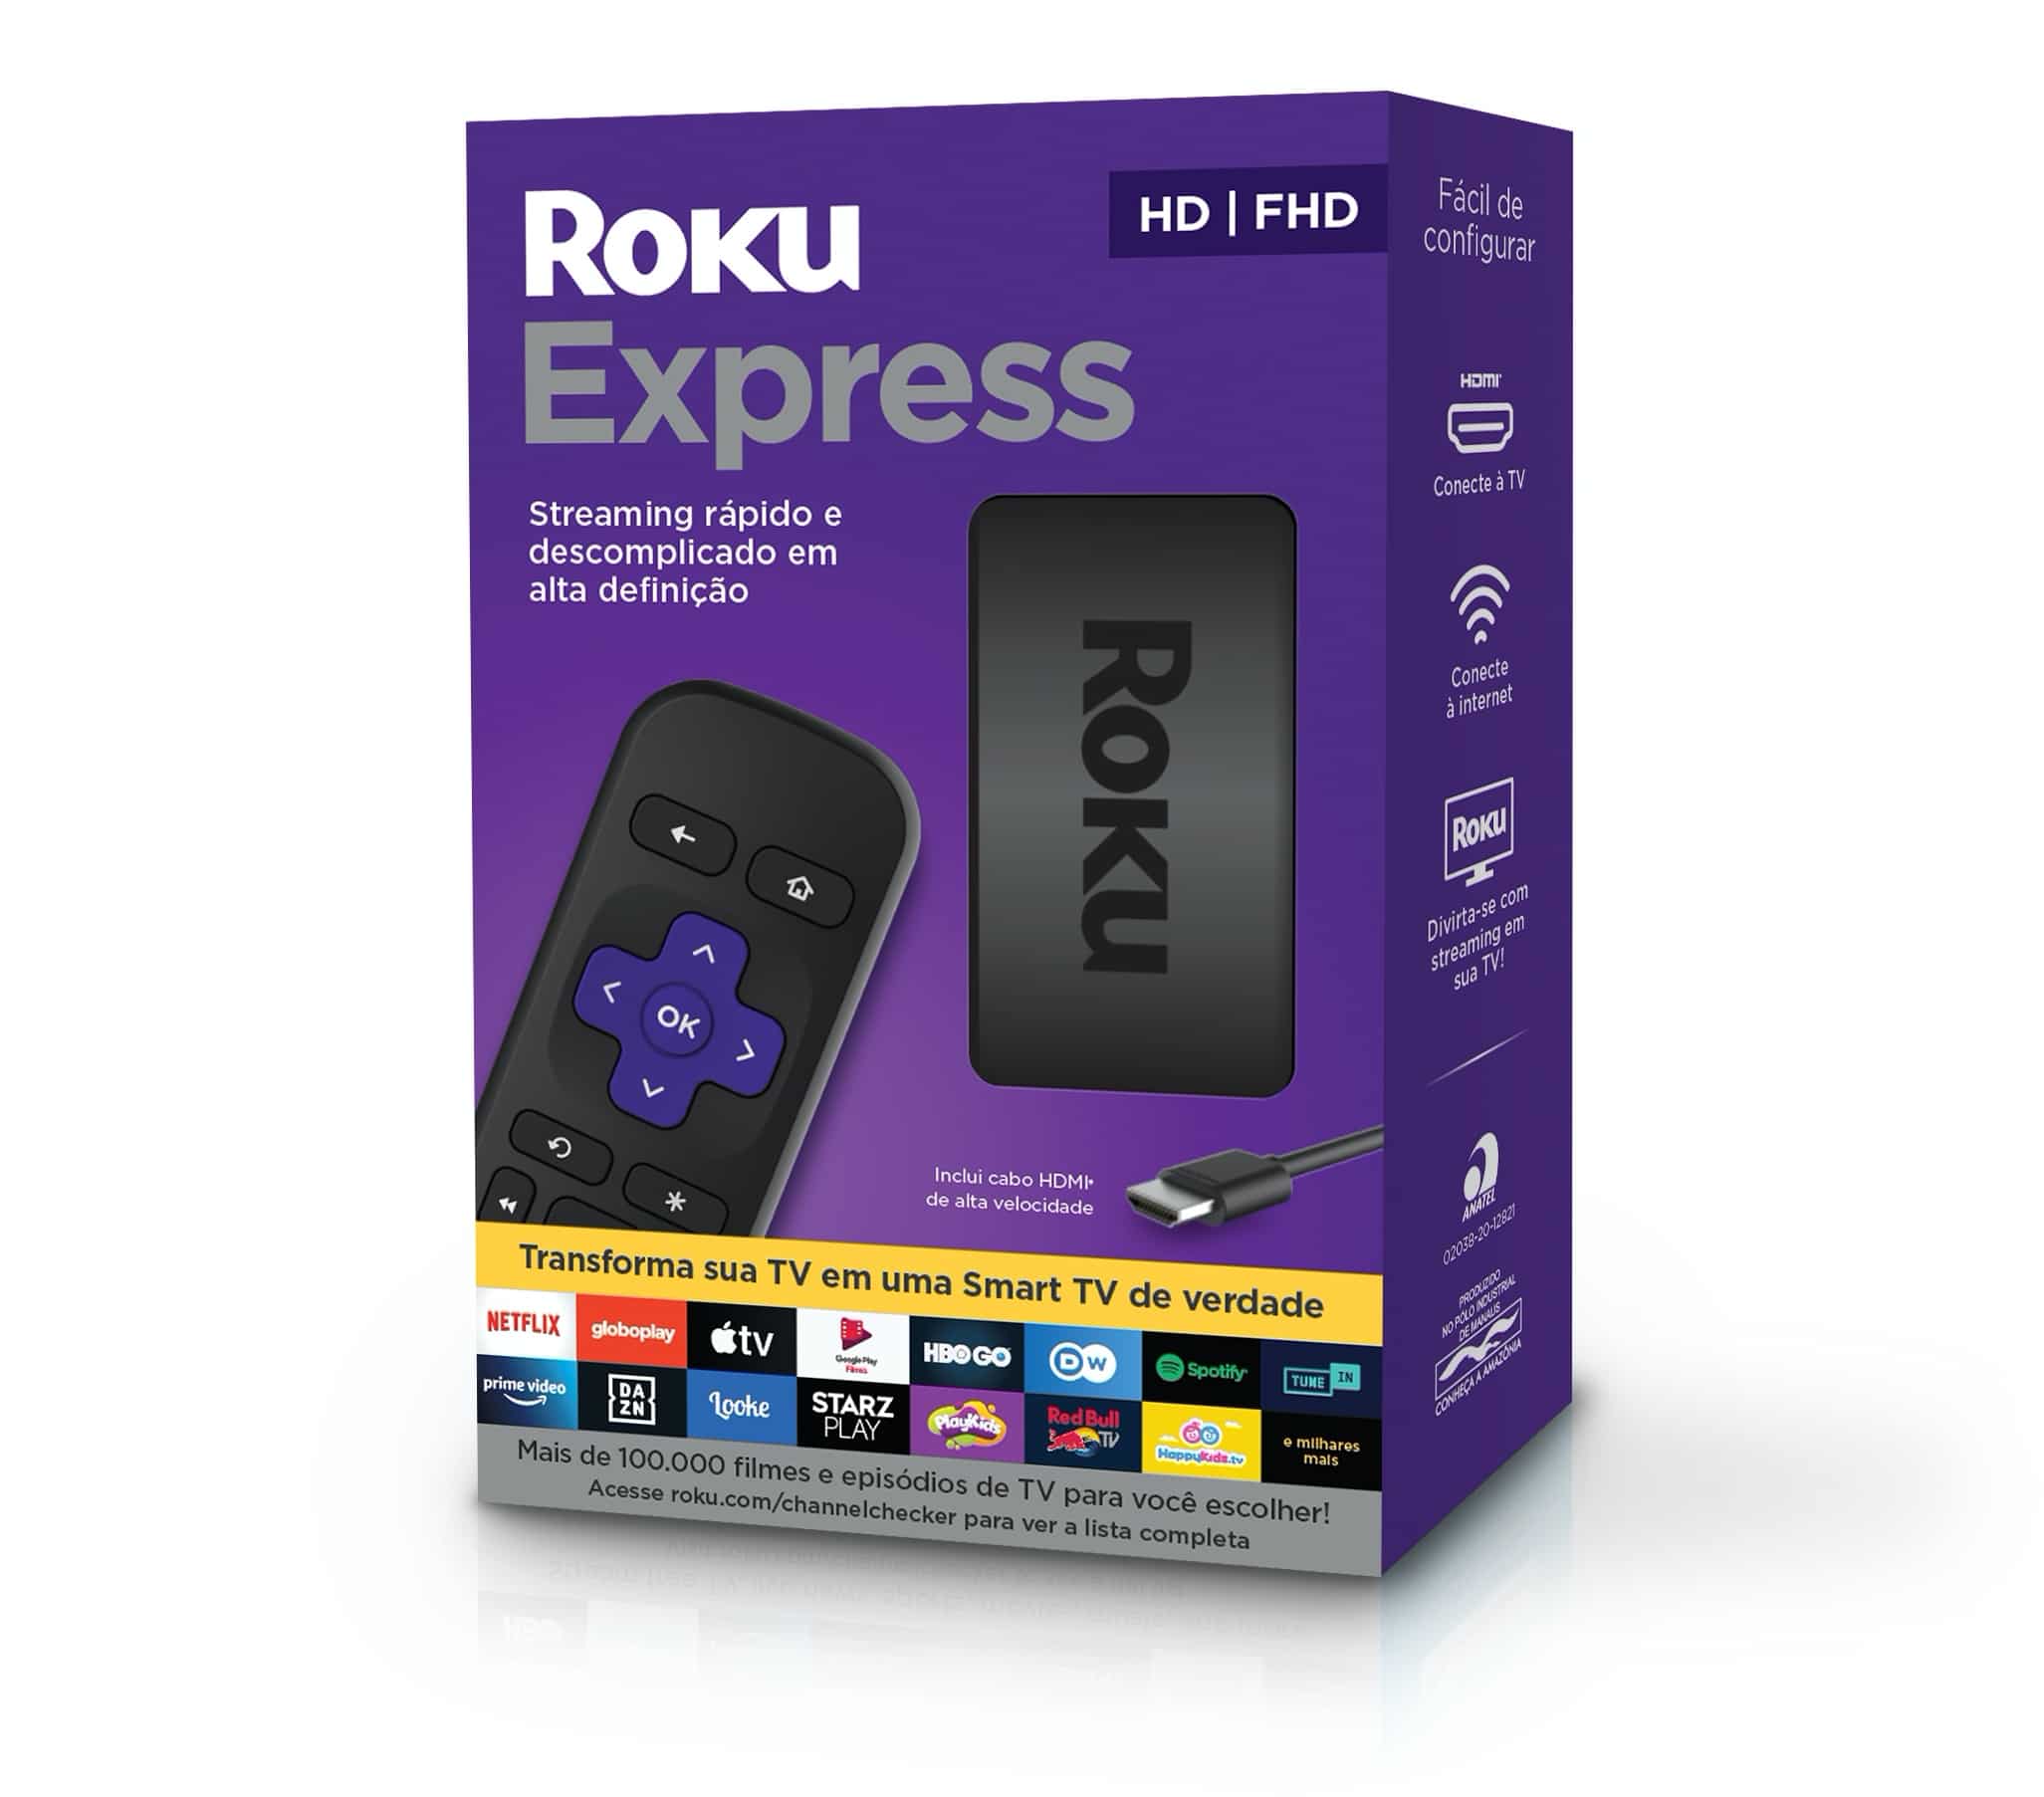 Caixa do Roku Express